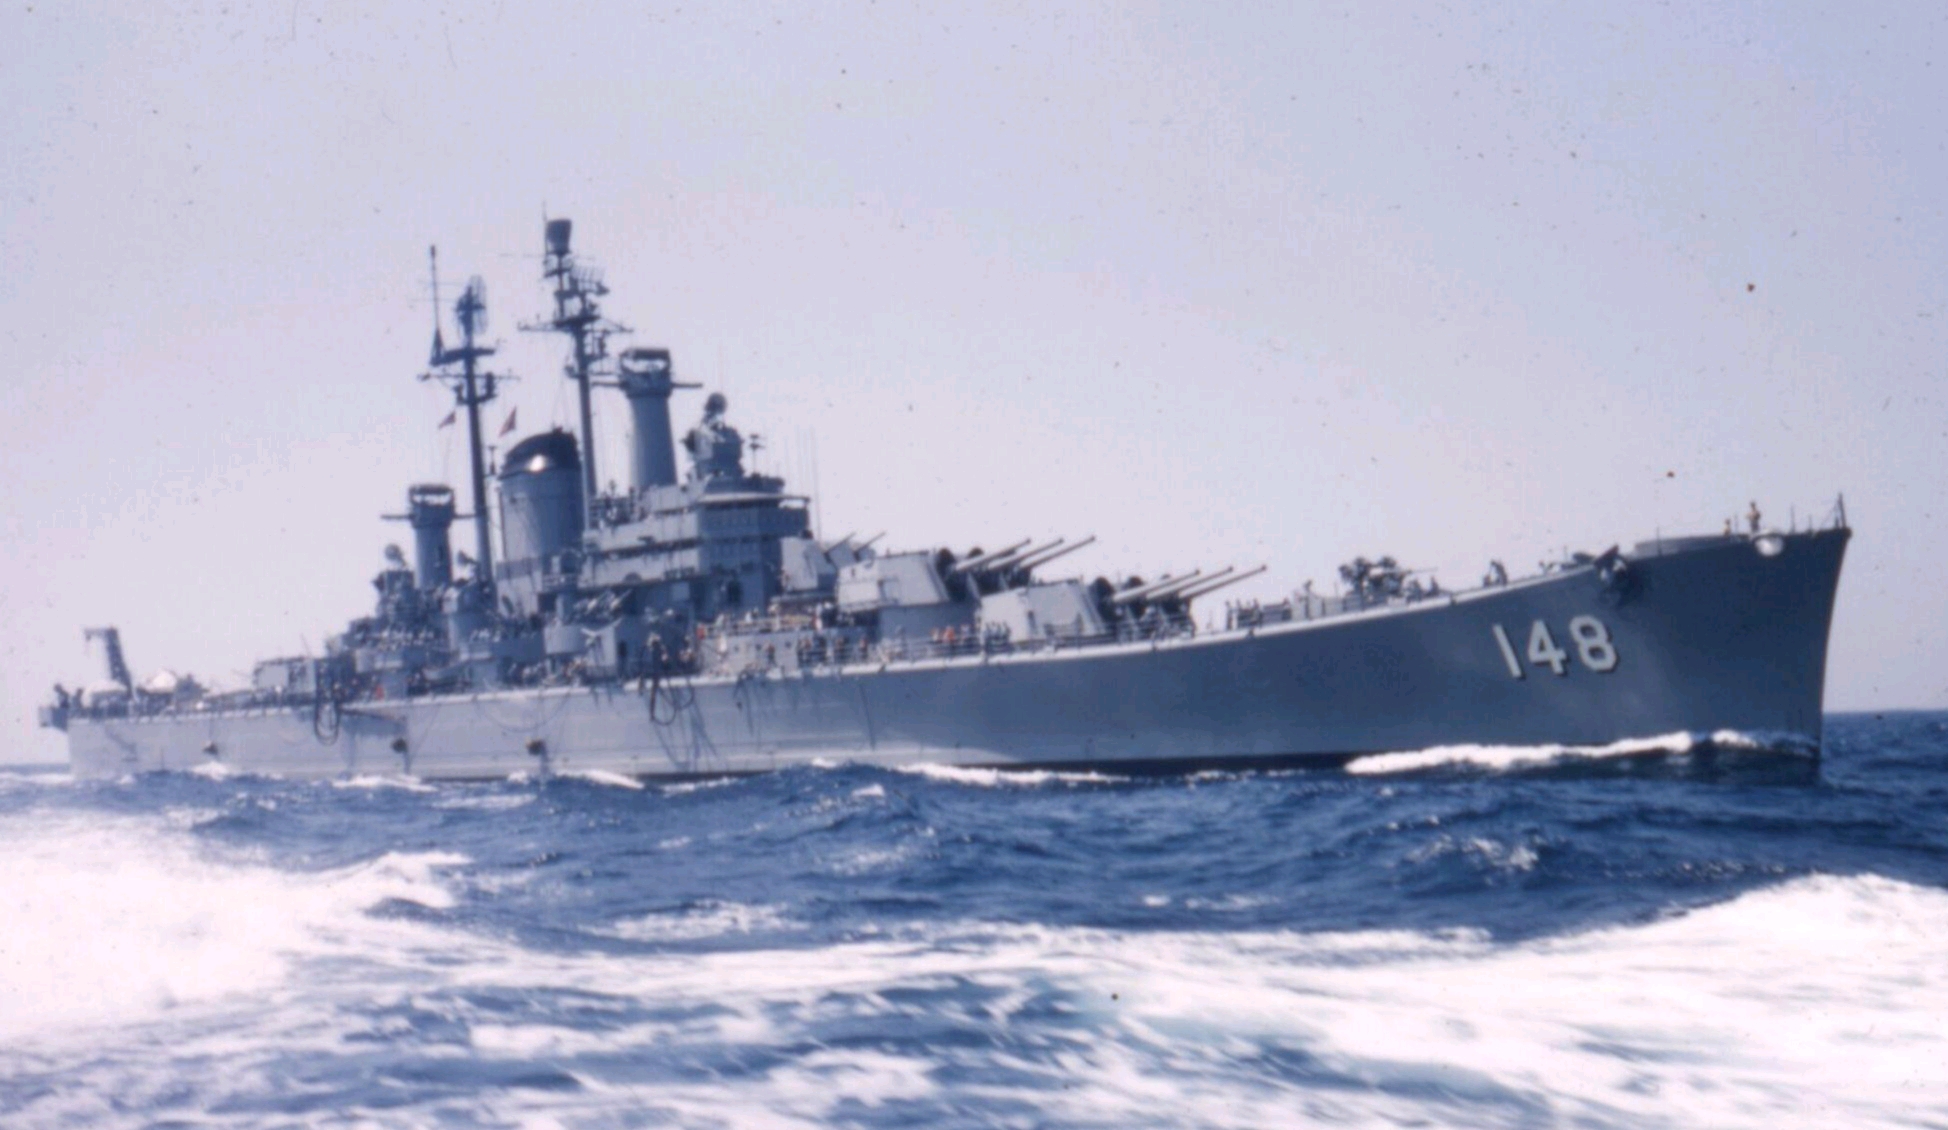 作为建造计划的重要一环,82型重巡洋舰被领袖给予了厚望,苏联海军的重